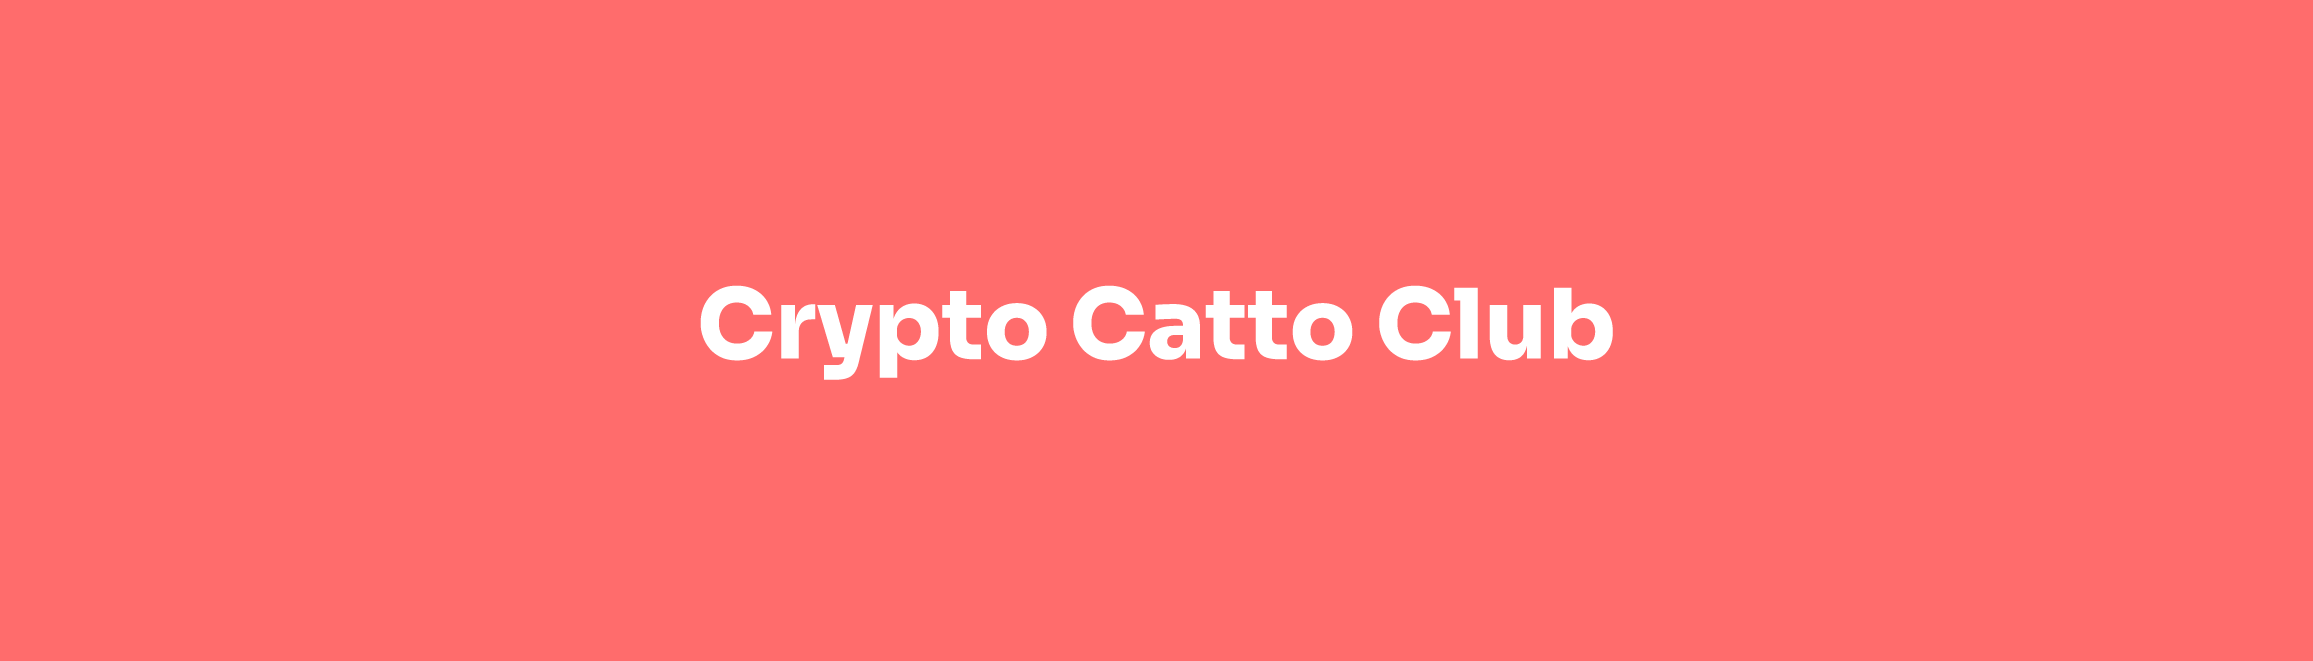 Crypto Catto Club